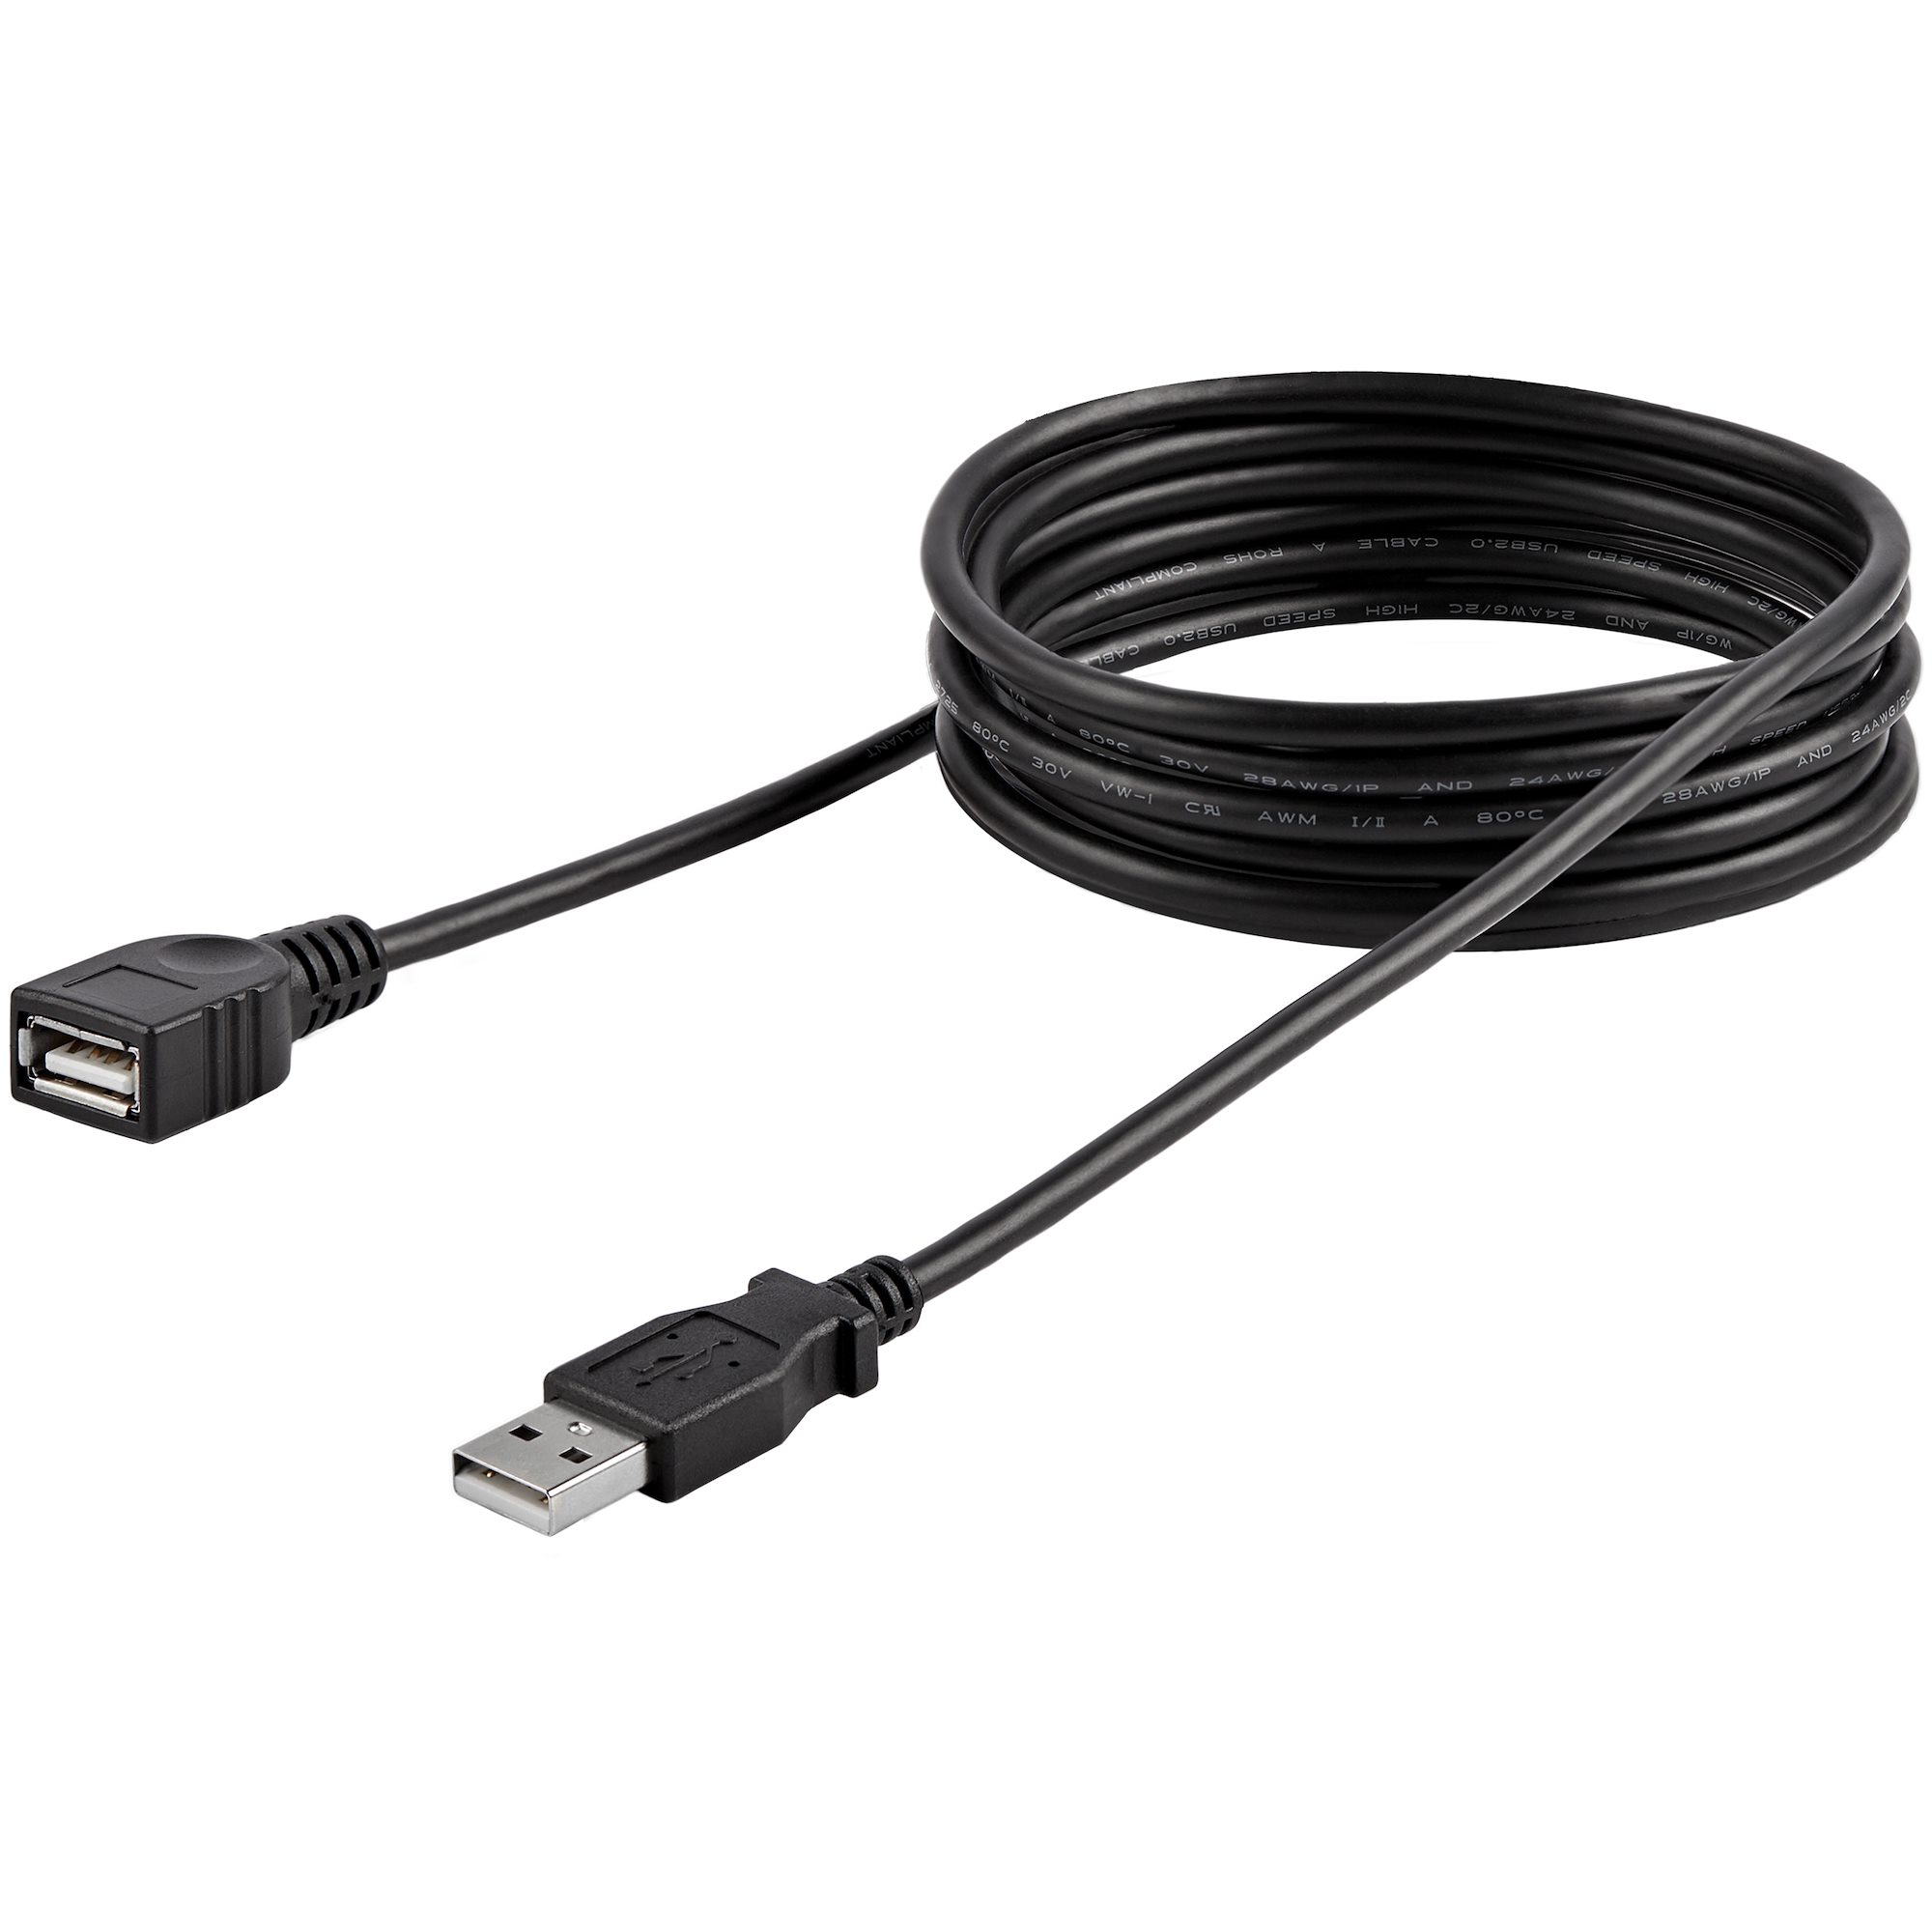 USB 2.0延長ケーブル 1.8m ブラック Type-A(オス) - Type-A(メス)